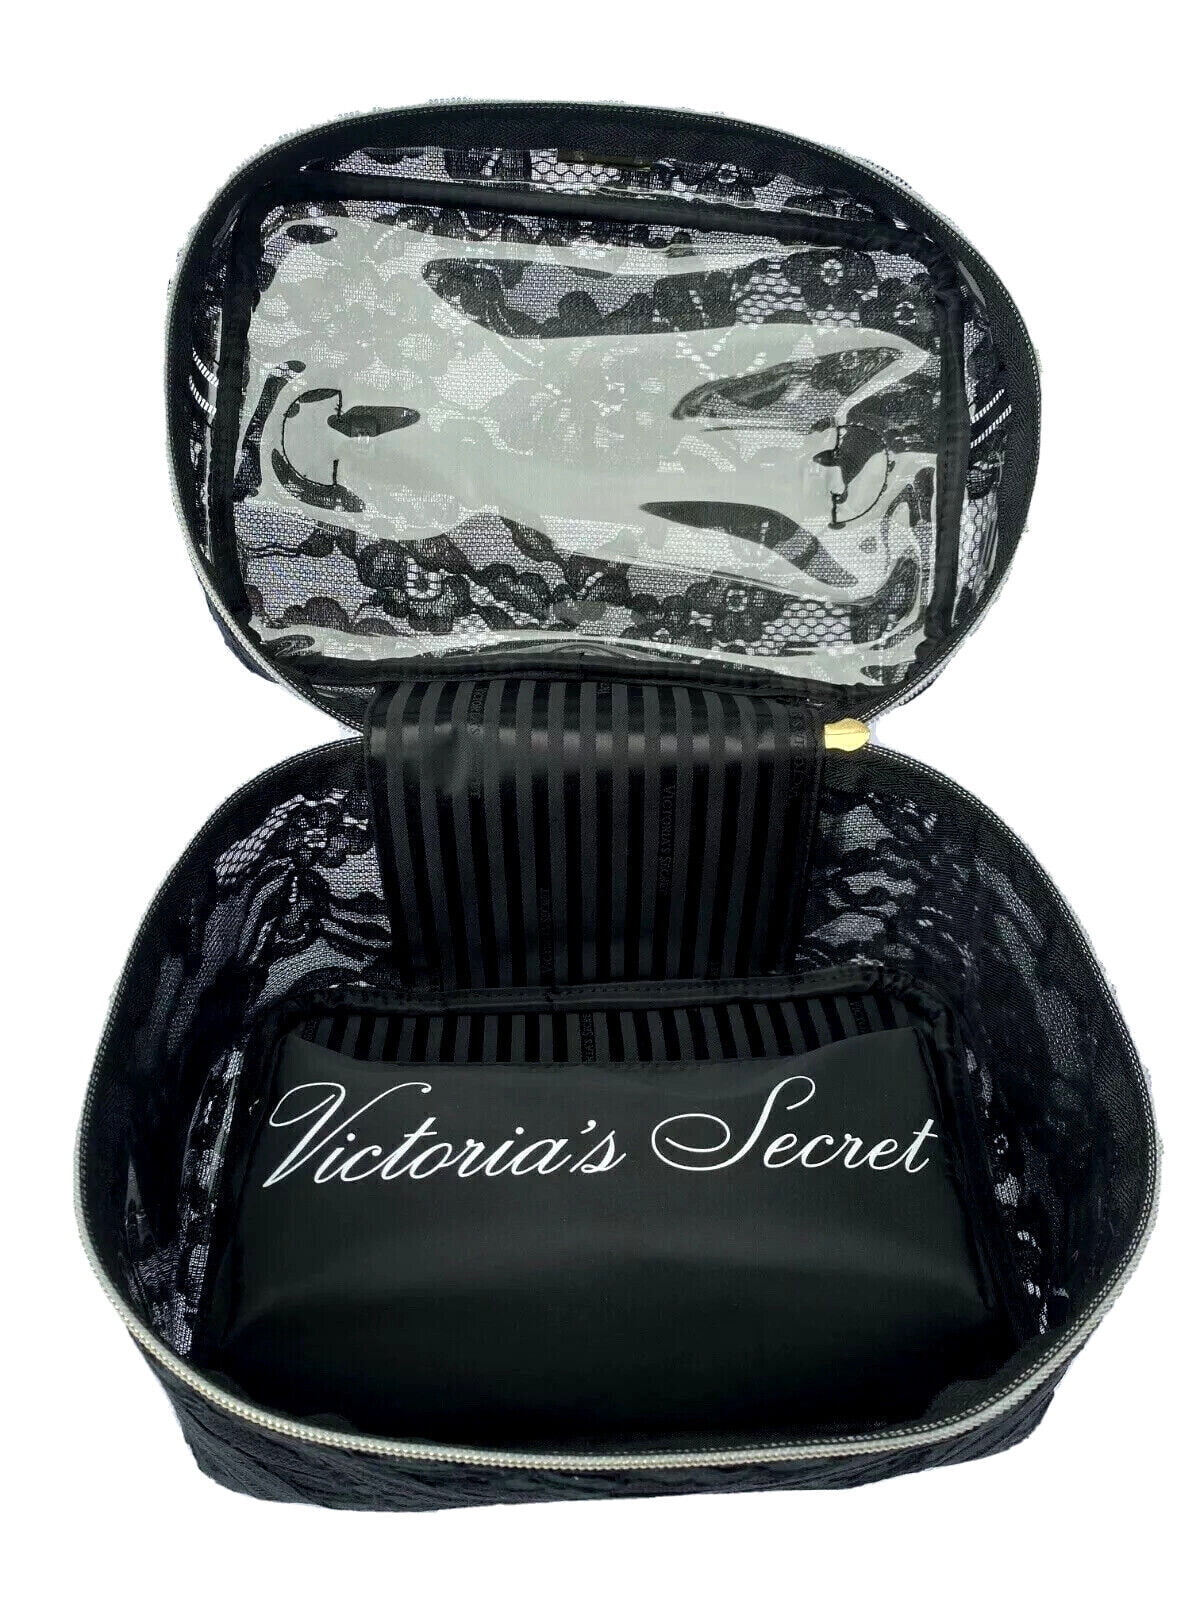 victoria secret makeup bag black